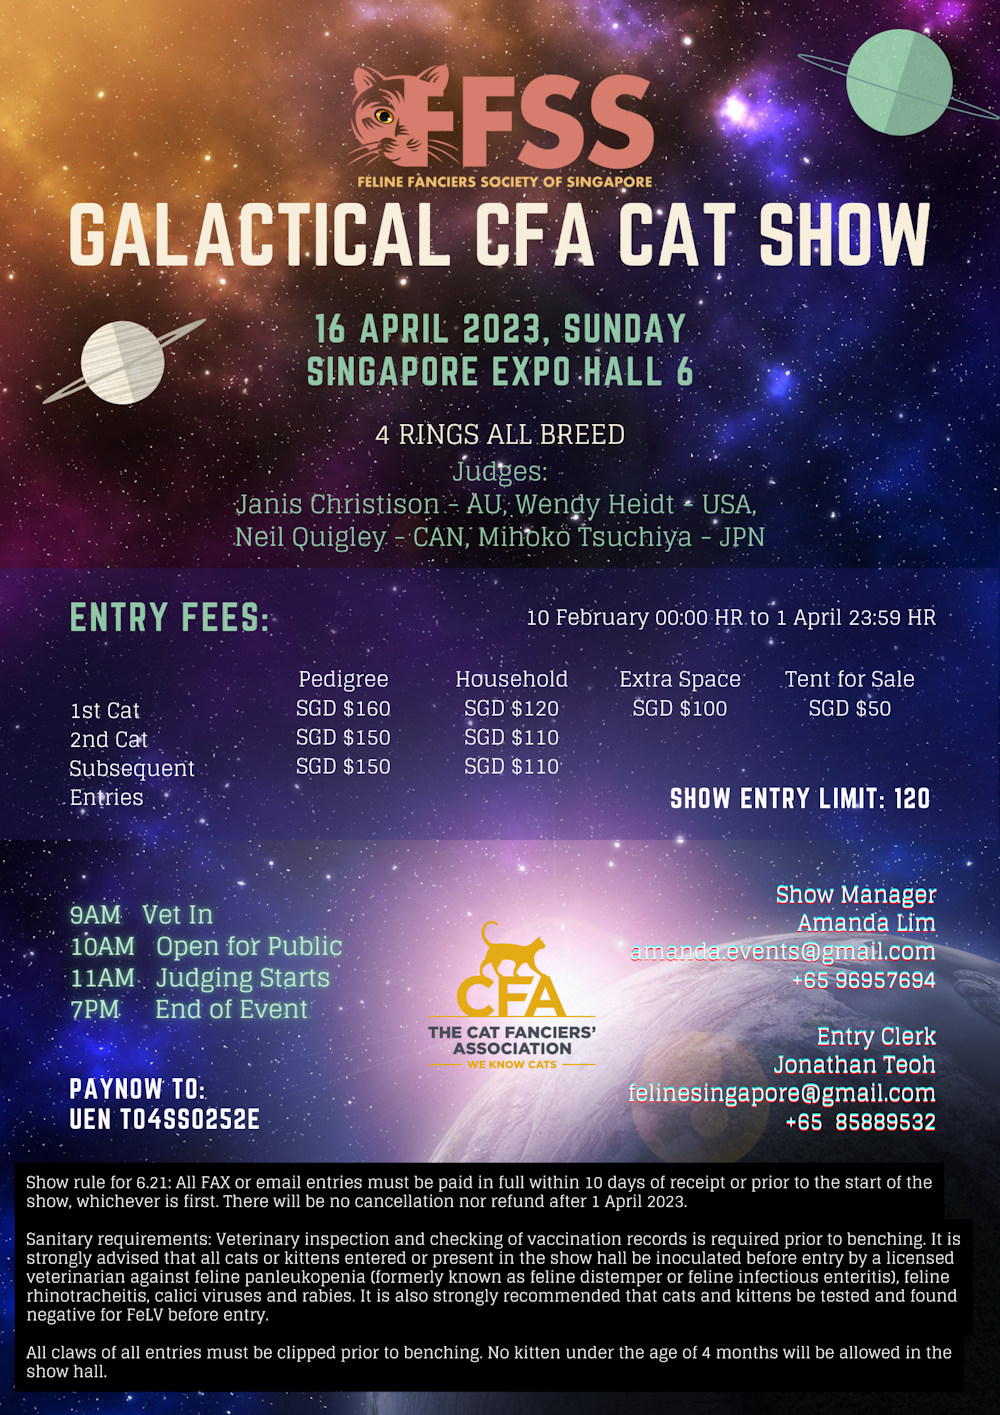 Official Show Counts The Cat Fanciers' Association, Inc